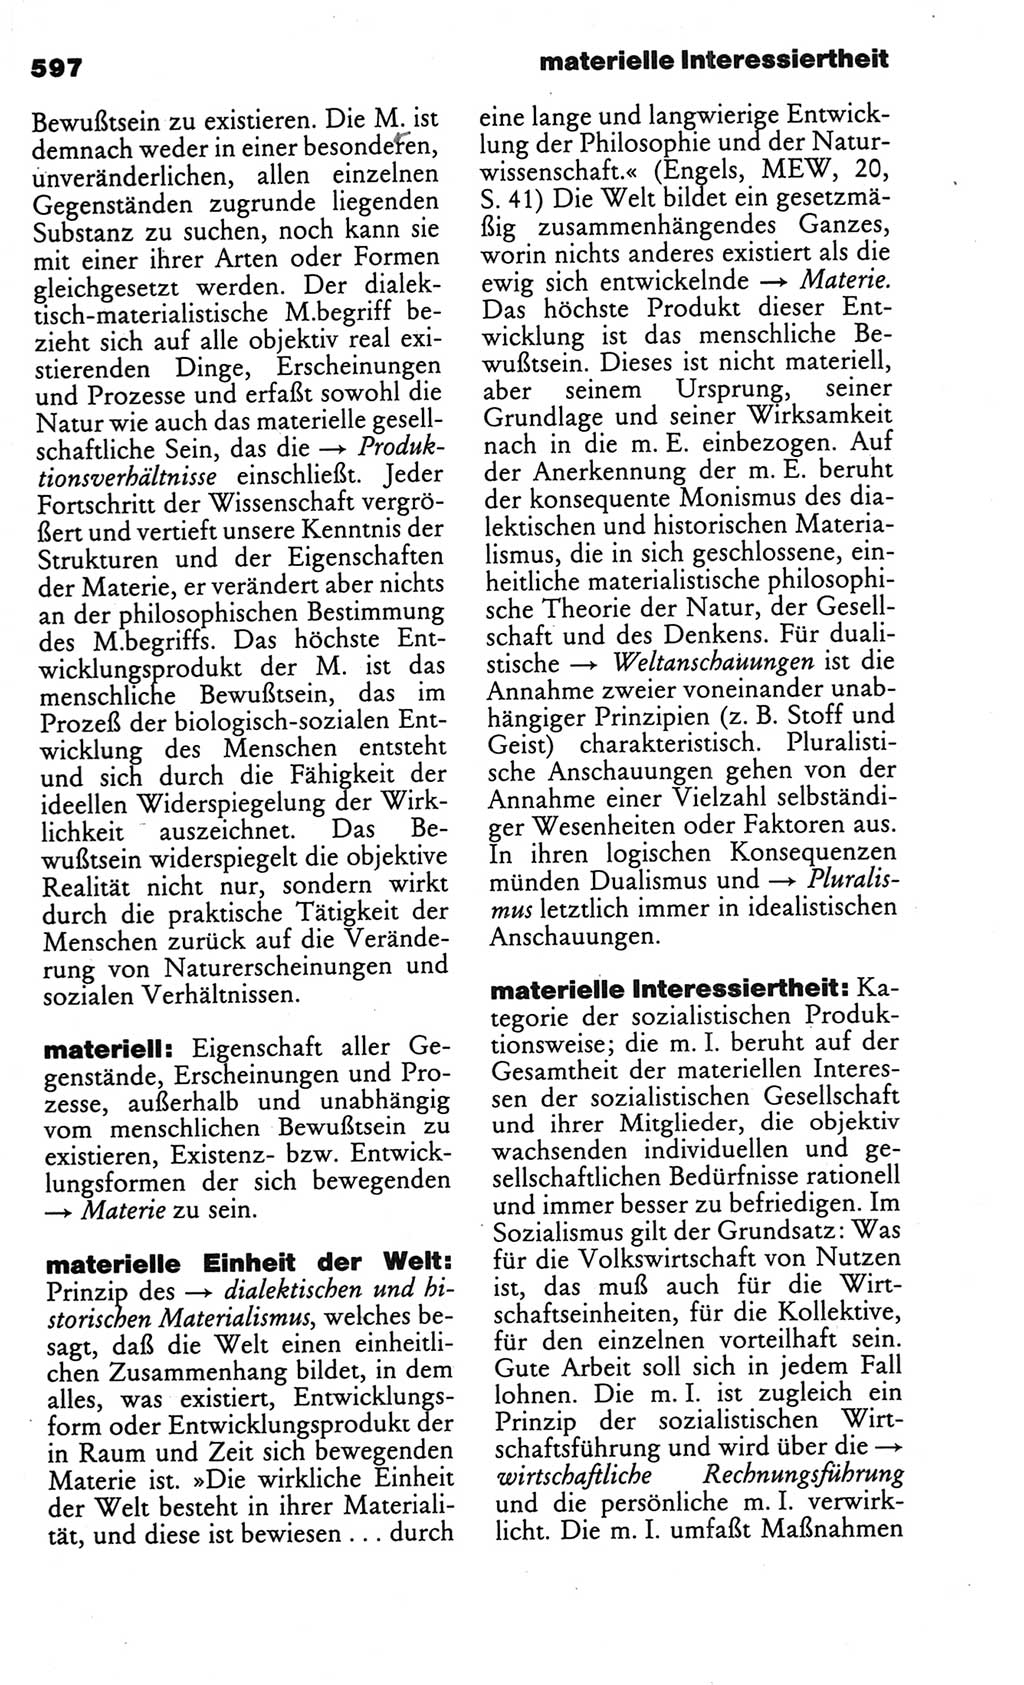 Kleines politisches Wörterbuch [Deutsche Demokratische Republik (DDR)] 1986, Seite 597 (Kl. pol. Wb. DDR 1986, S. 597)